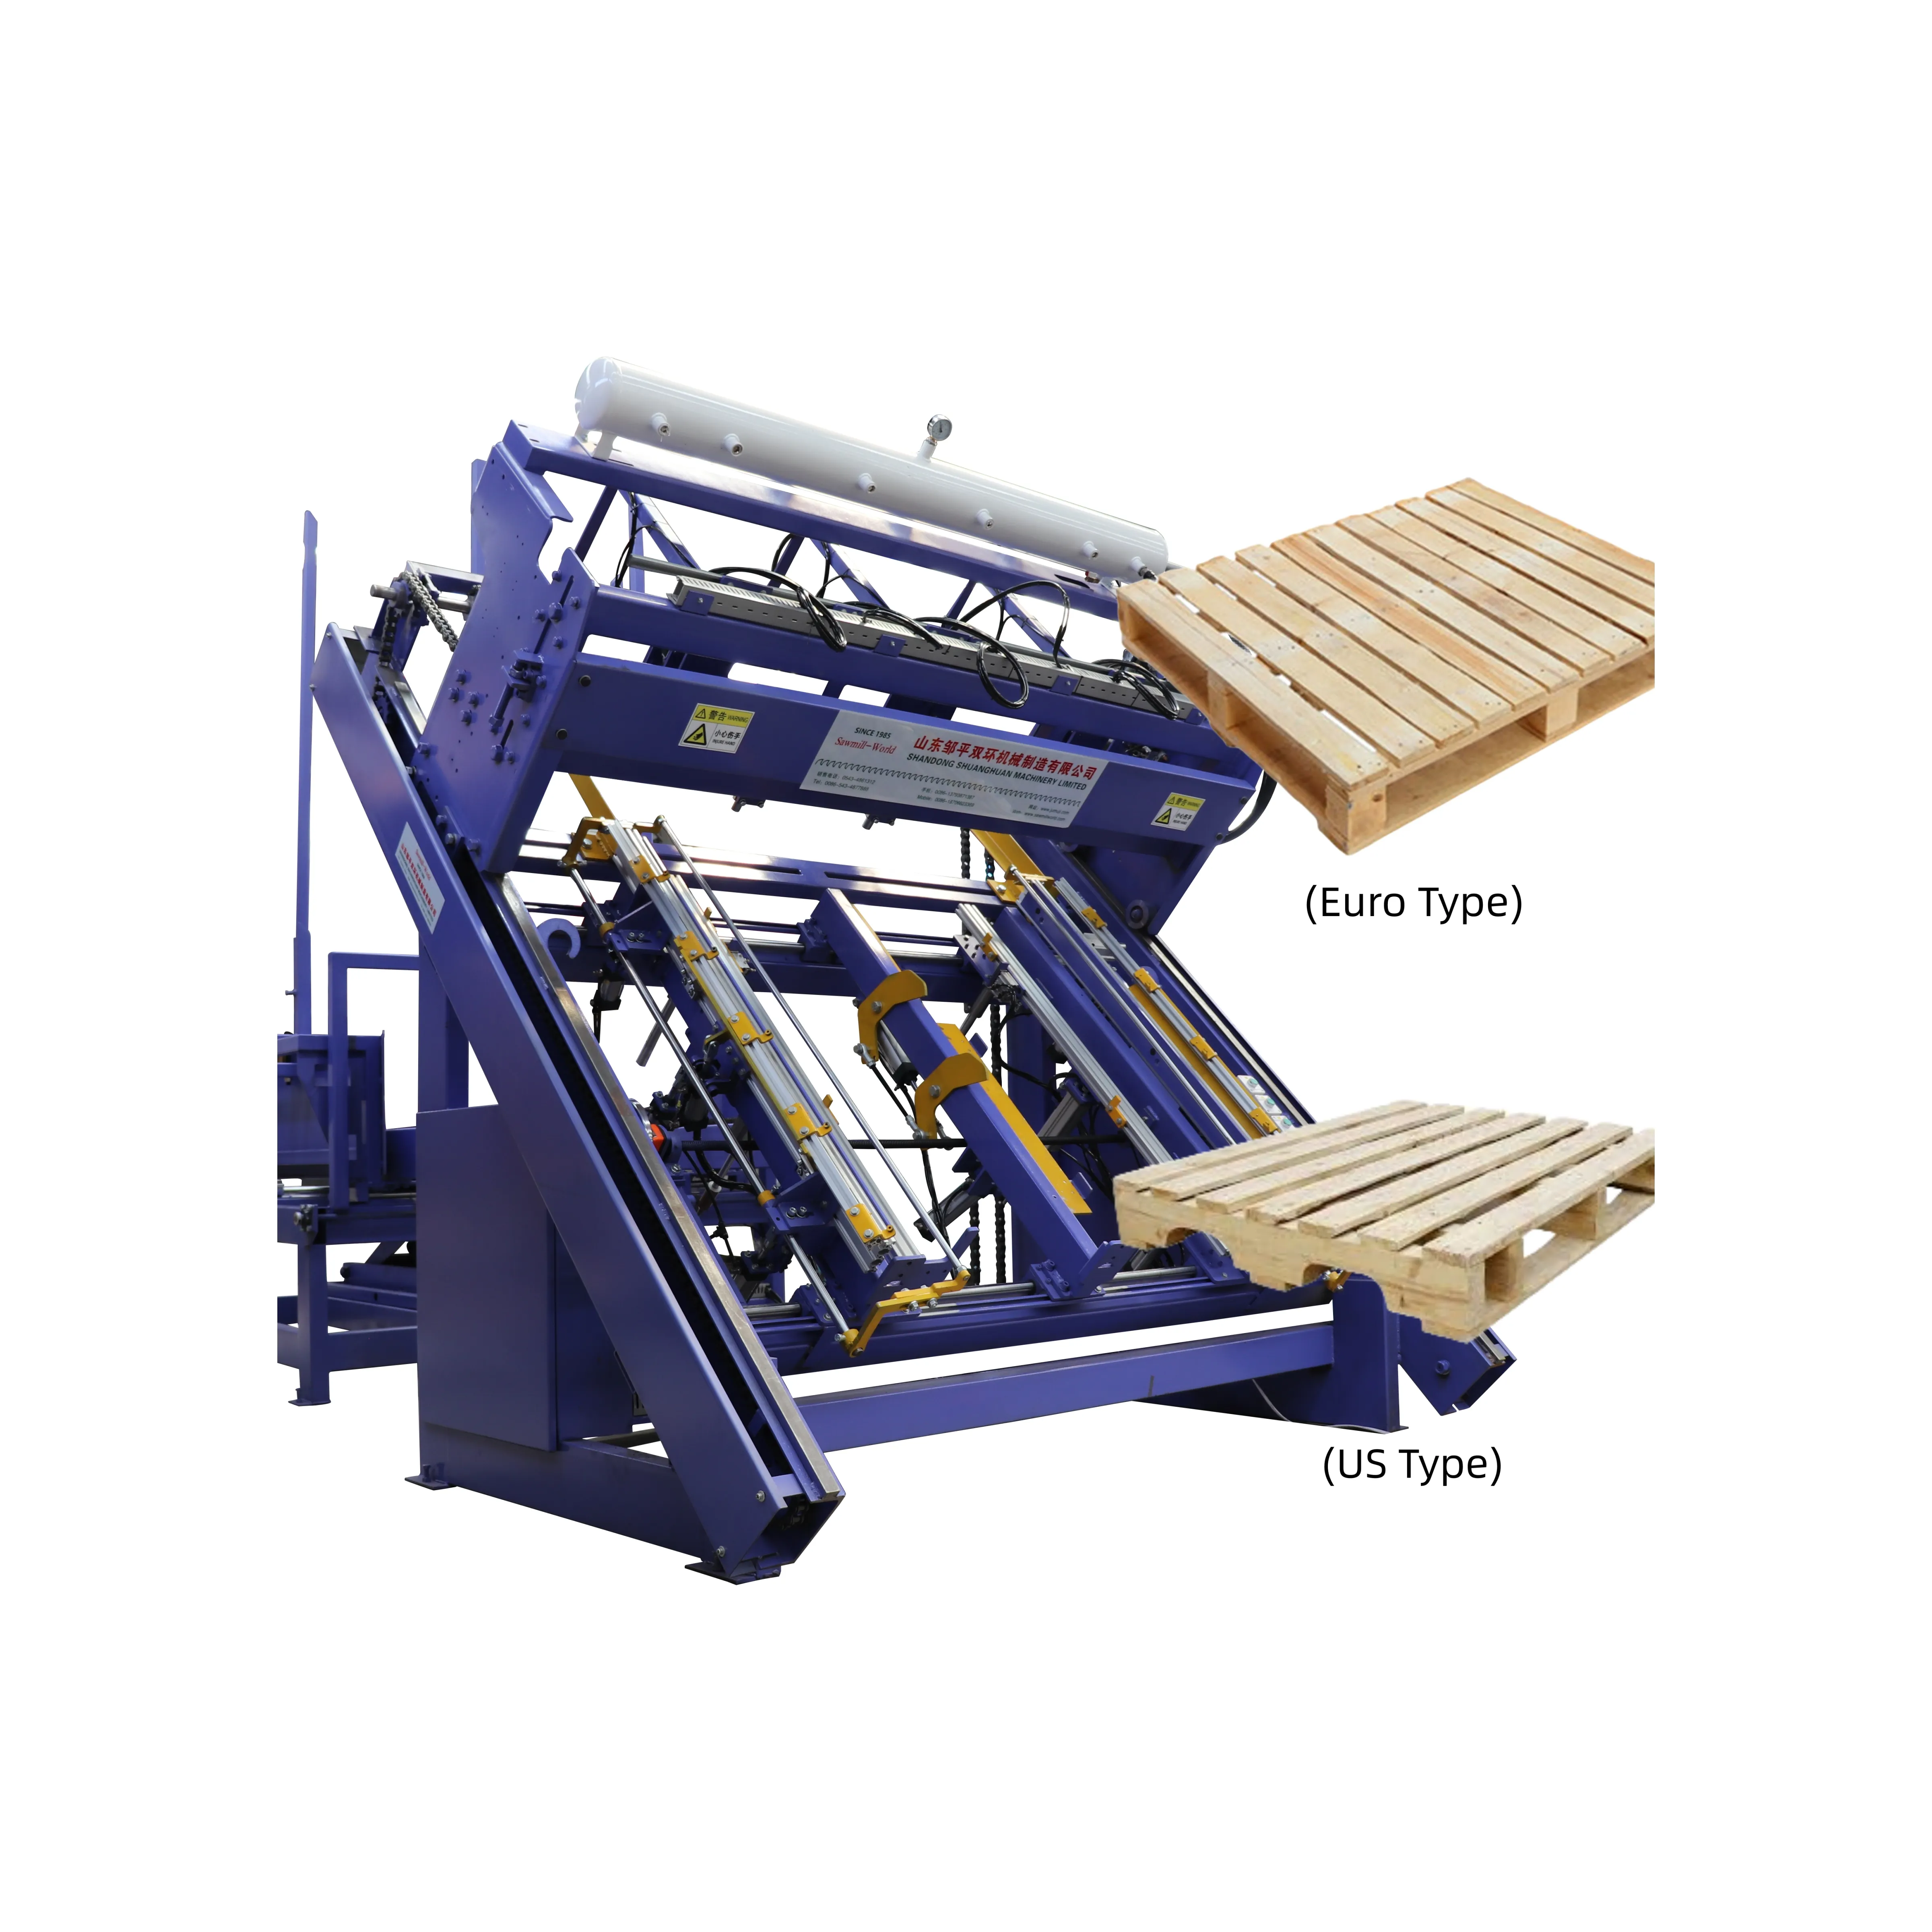 木製パレット製造機パレット釘打機は最も重要なパレット製造機です